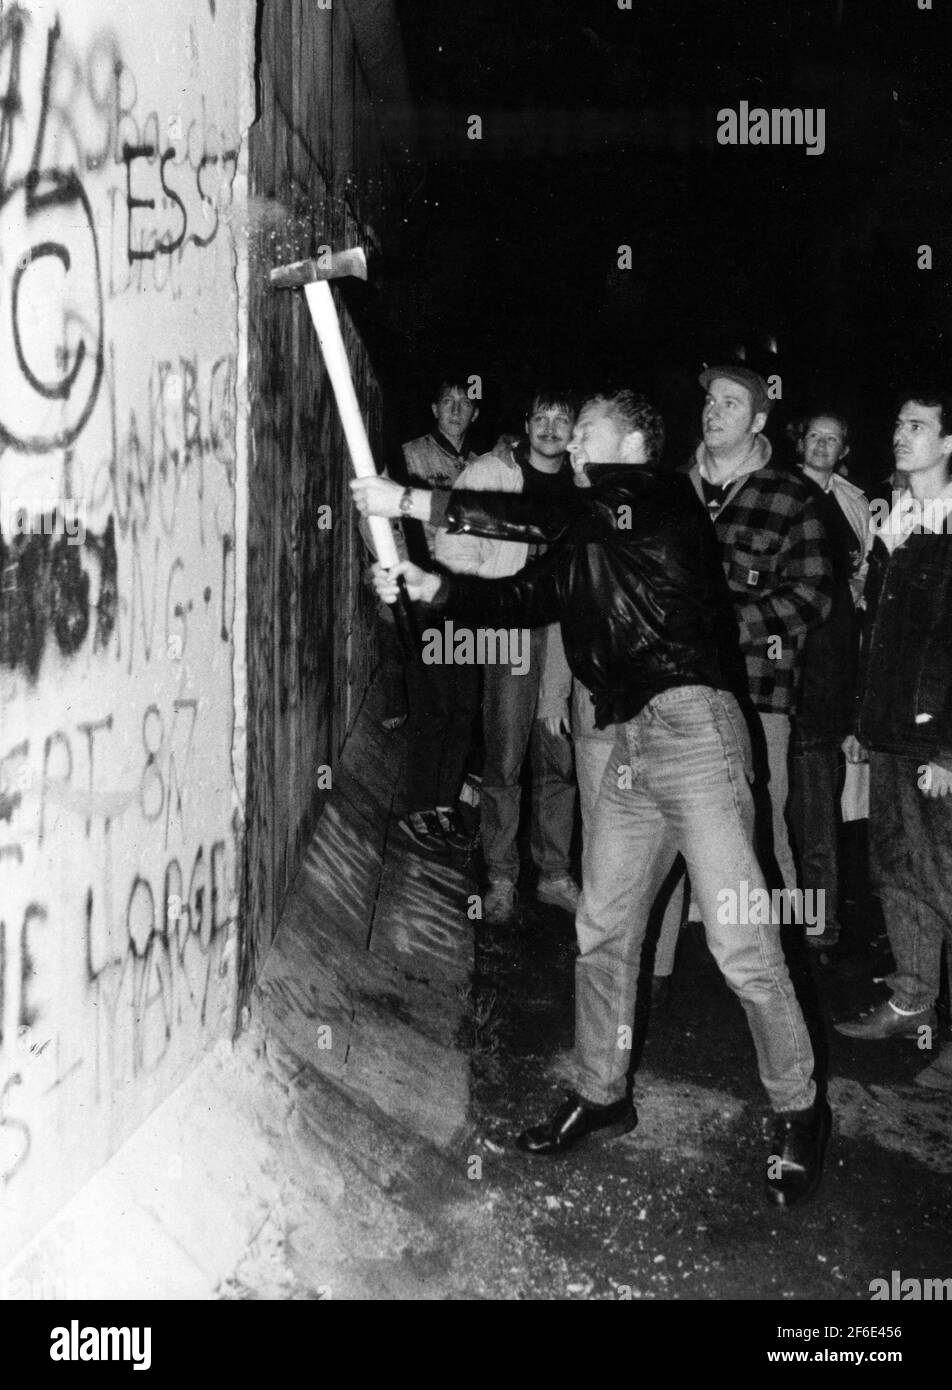 Berlin 1989-11-15 der Fall der Berliner Mauer, die Grenzöffnung. Menschen, die versuchen, die Wand mit verschiedenen Werkzeugen niederzureißen. Foto: Sven-Erik Sjoberg / DN / TT / Code 53 Stockfoto